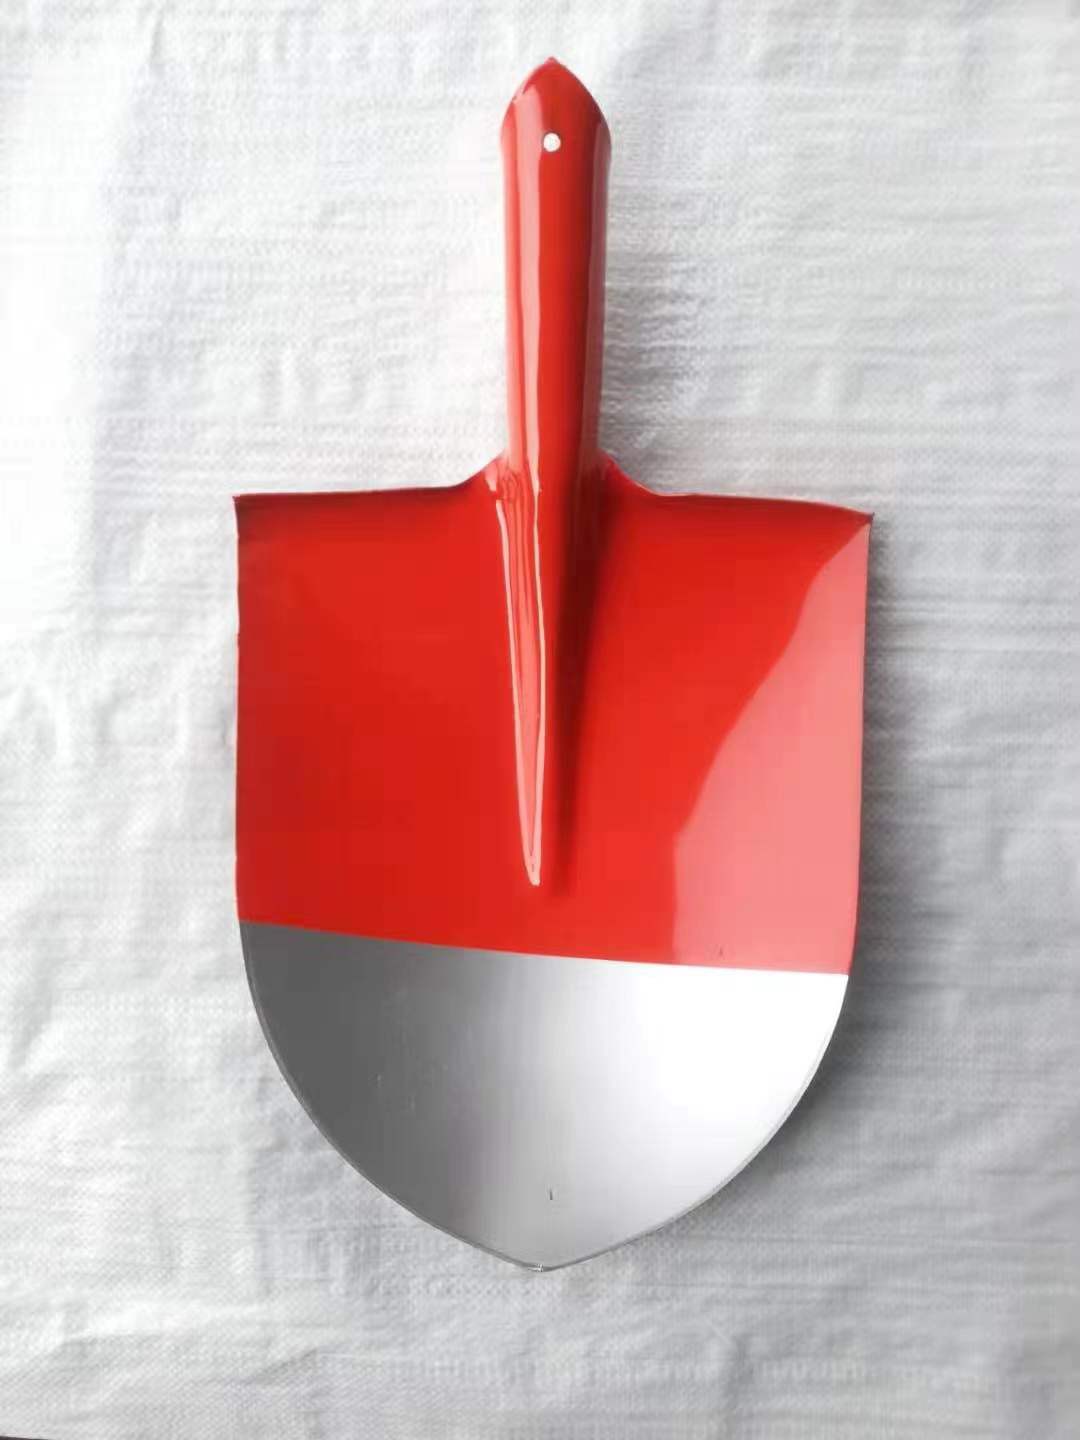 KING TOOLS牌红白颜色S503钢锹,铁锹,铁铲,锰钢制做,热处理工艺详情图1